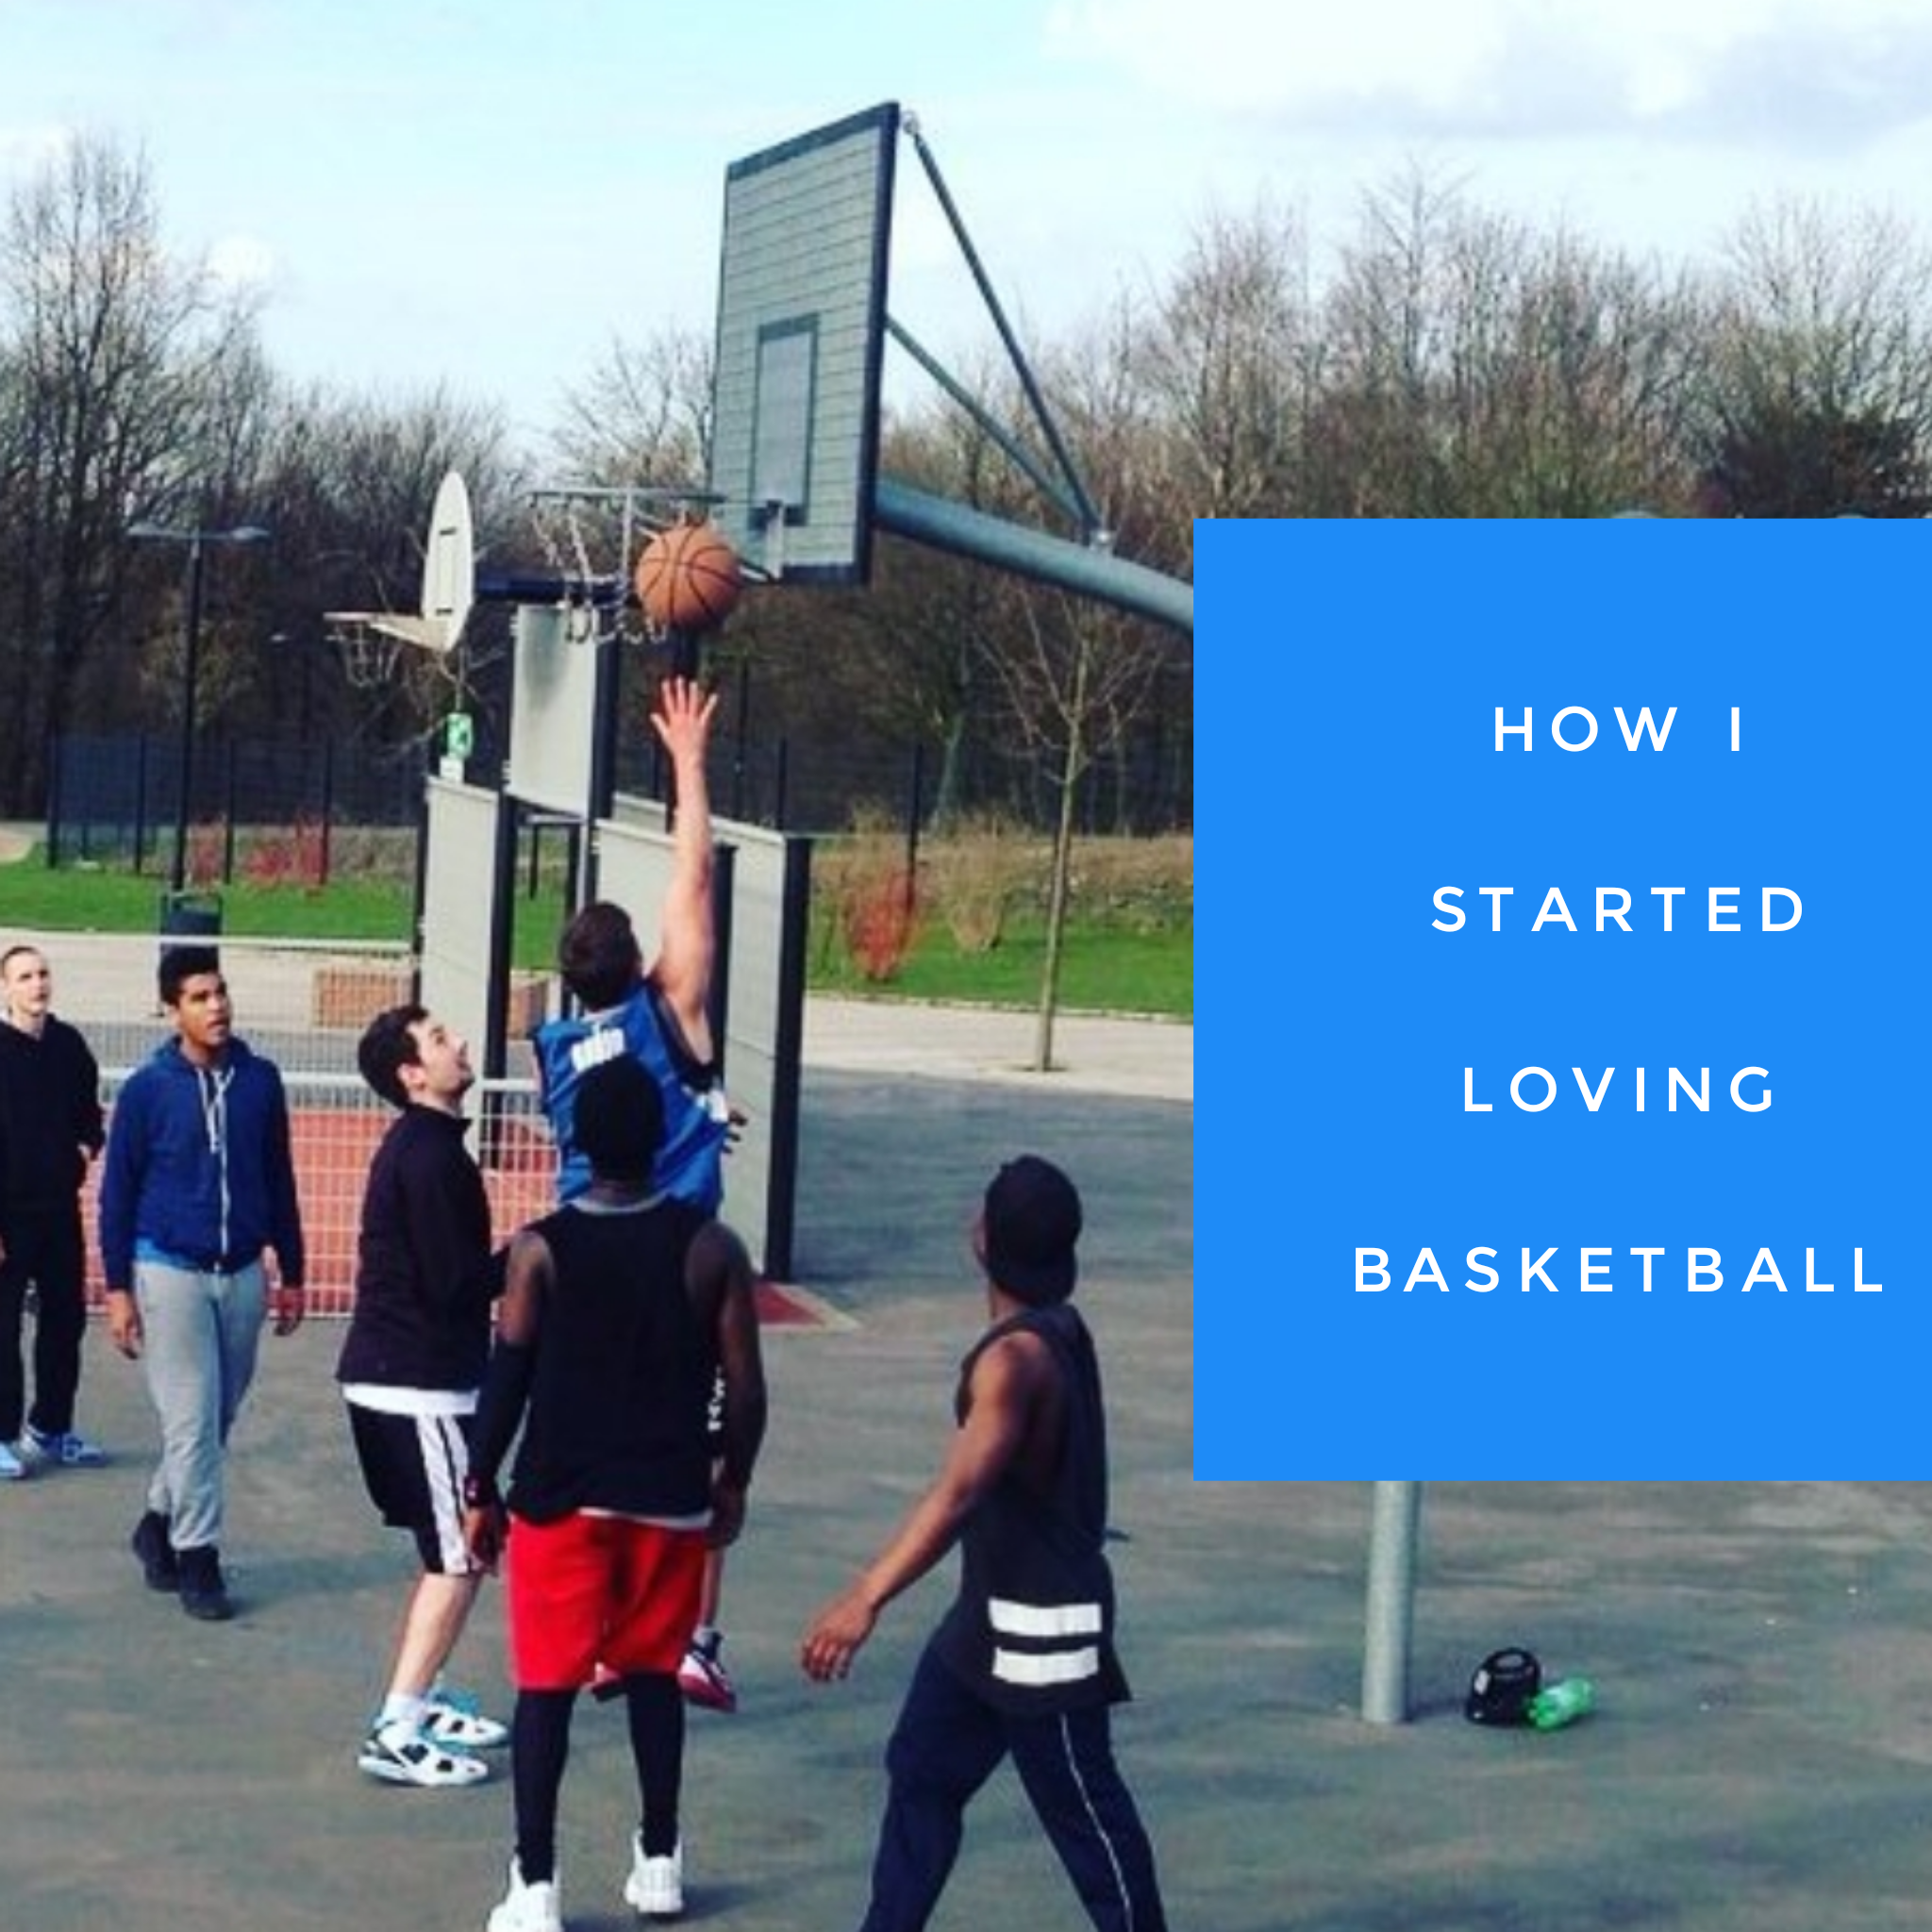 How I started loving Basketball